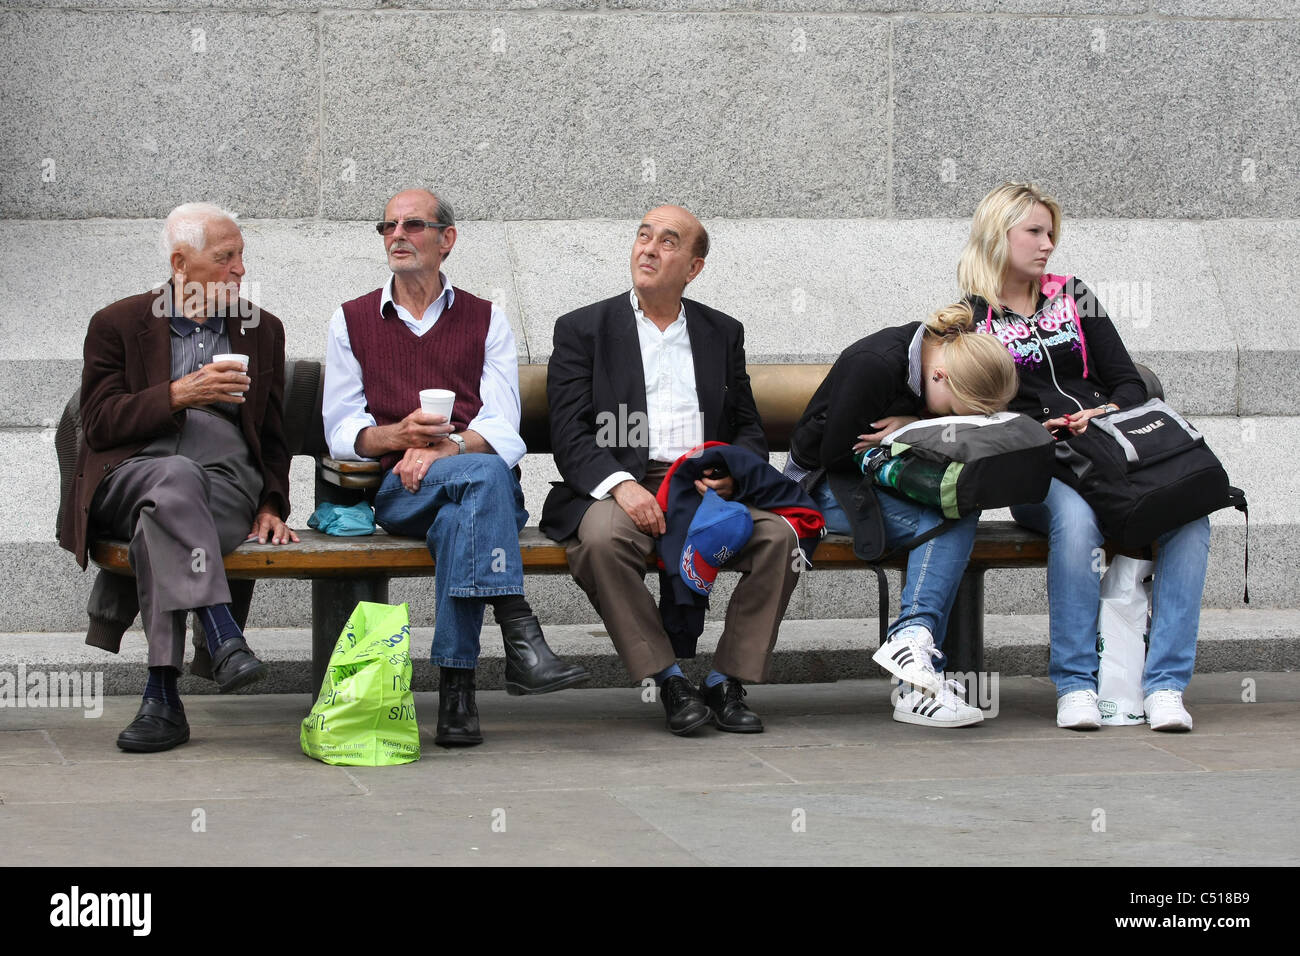 5 personnes assises sur un banc, une avec sa tête posée sur son sac à dos. A lieu à Trafalgar Square, Londres Banque D'Images